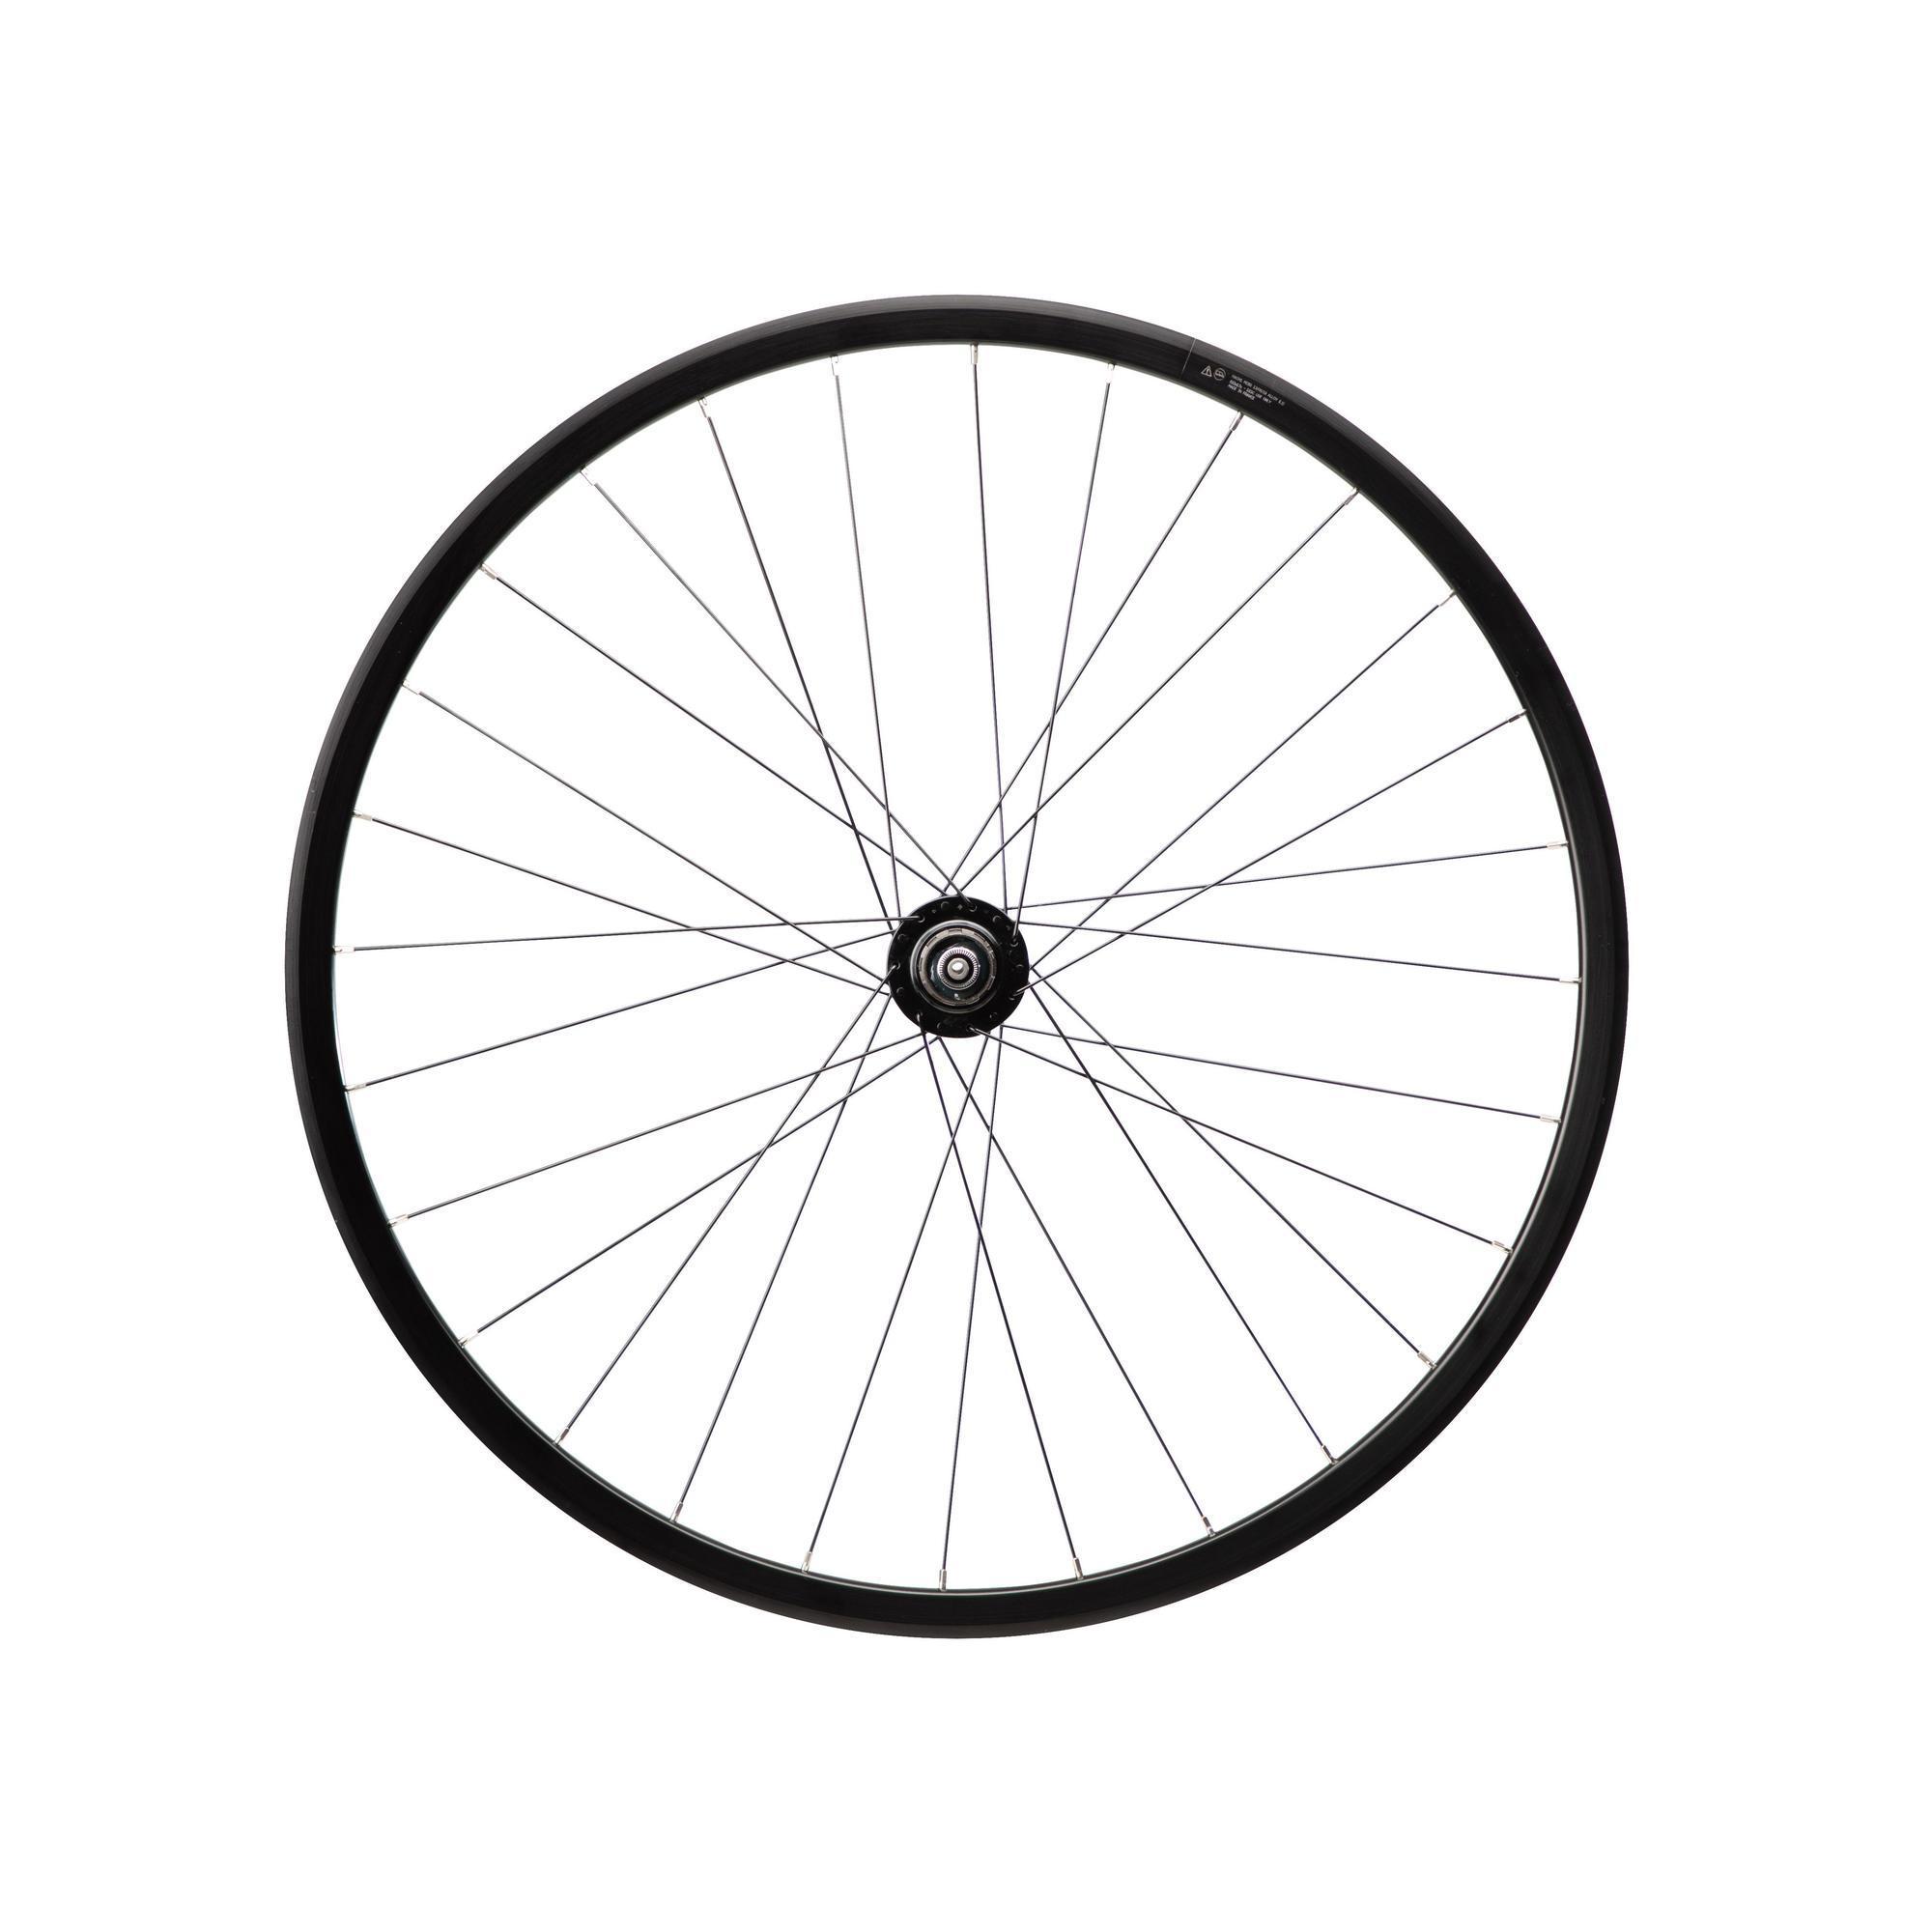 Как выглядит колесо велосипеда